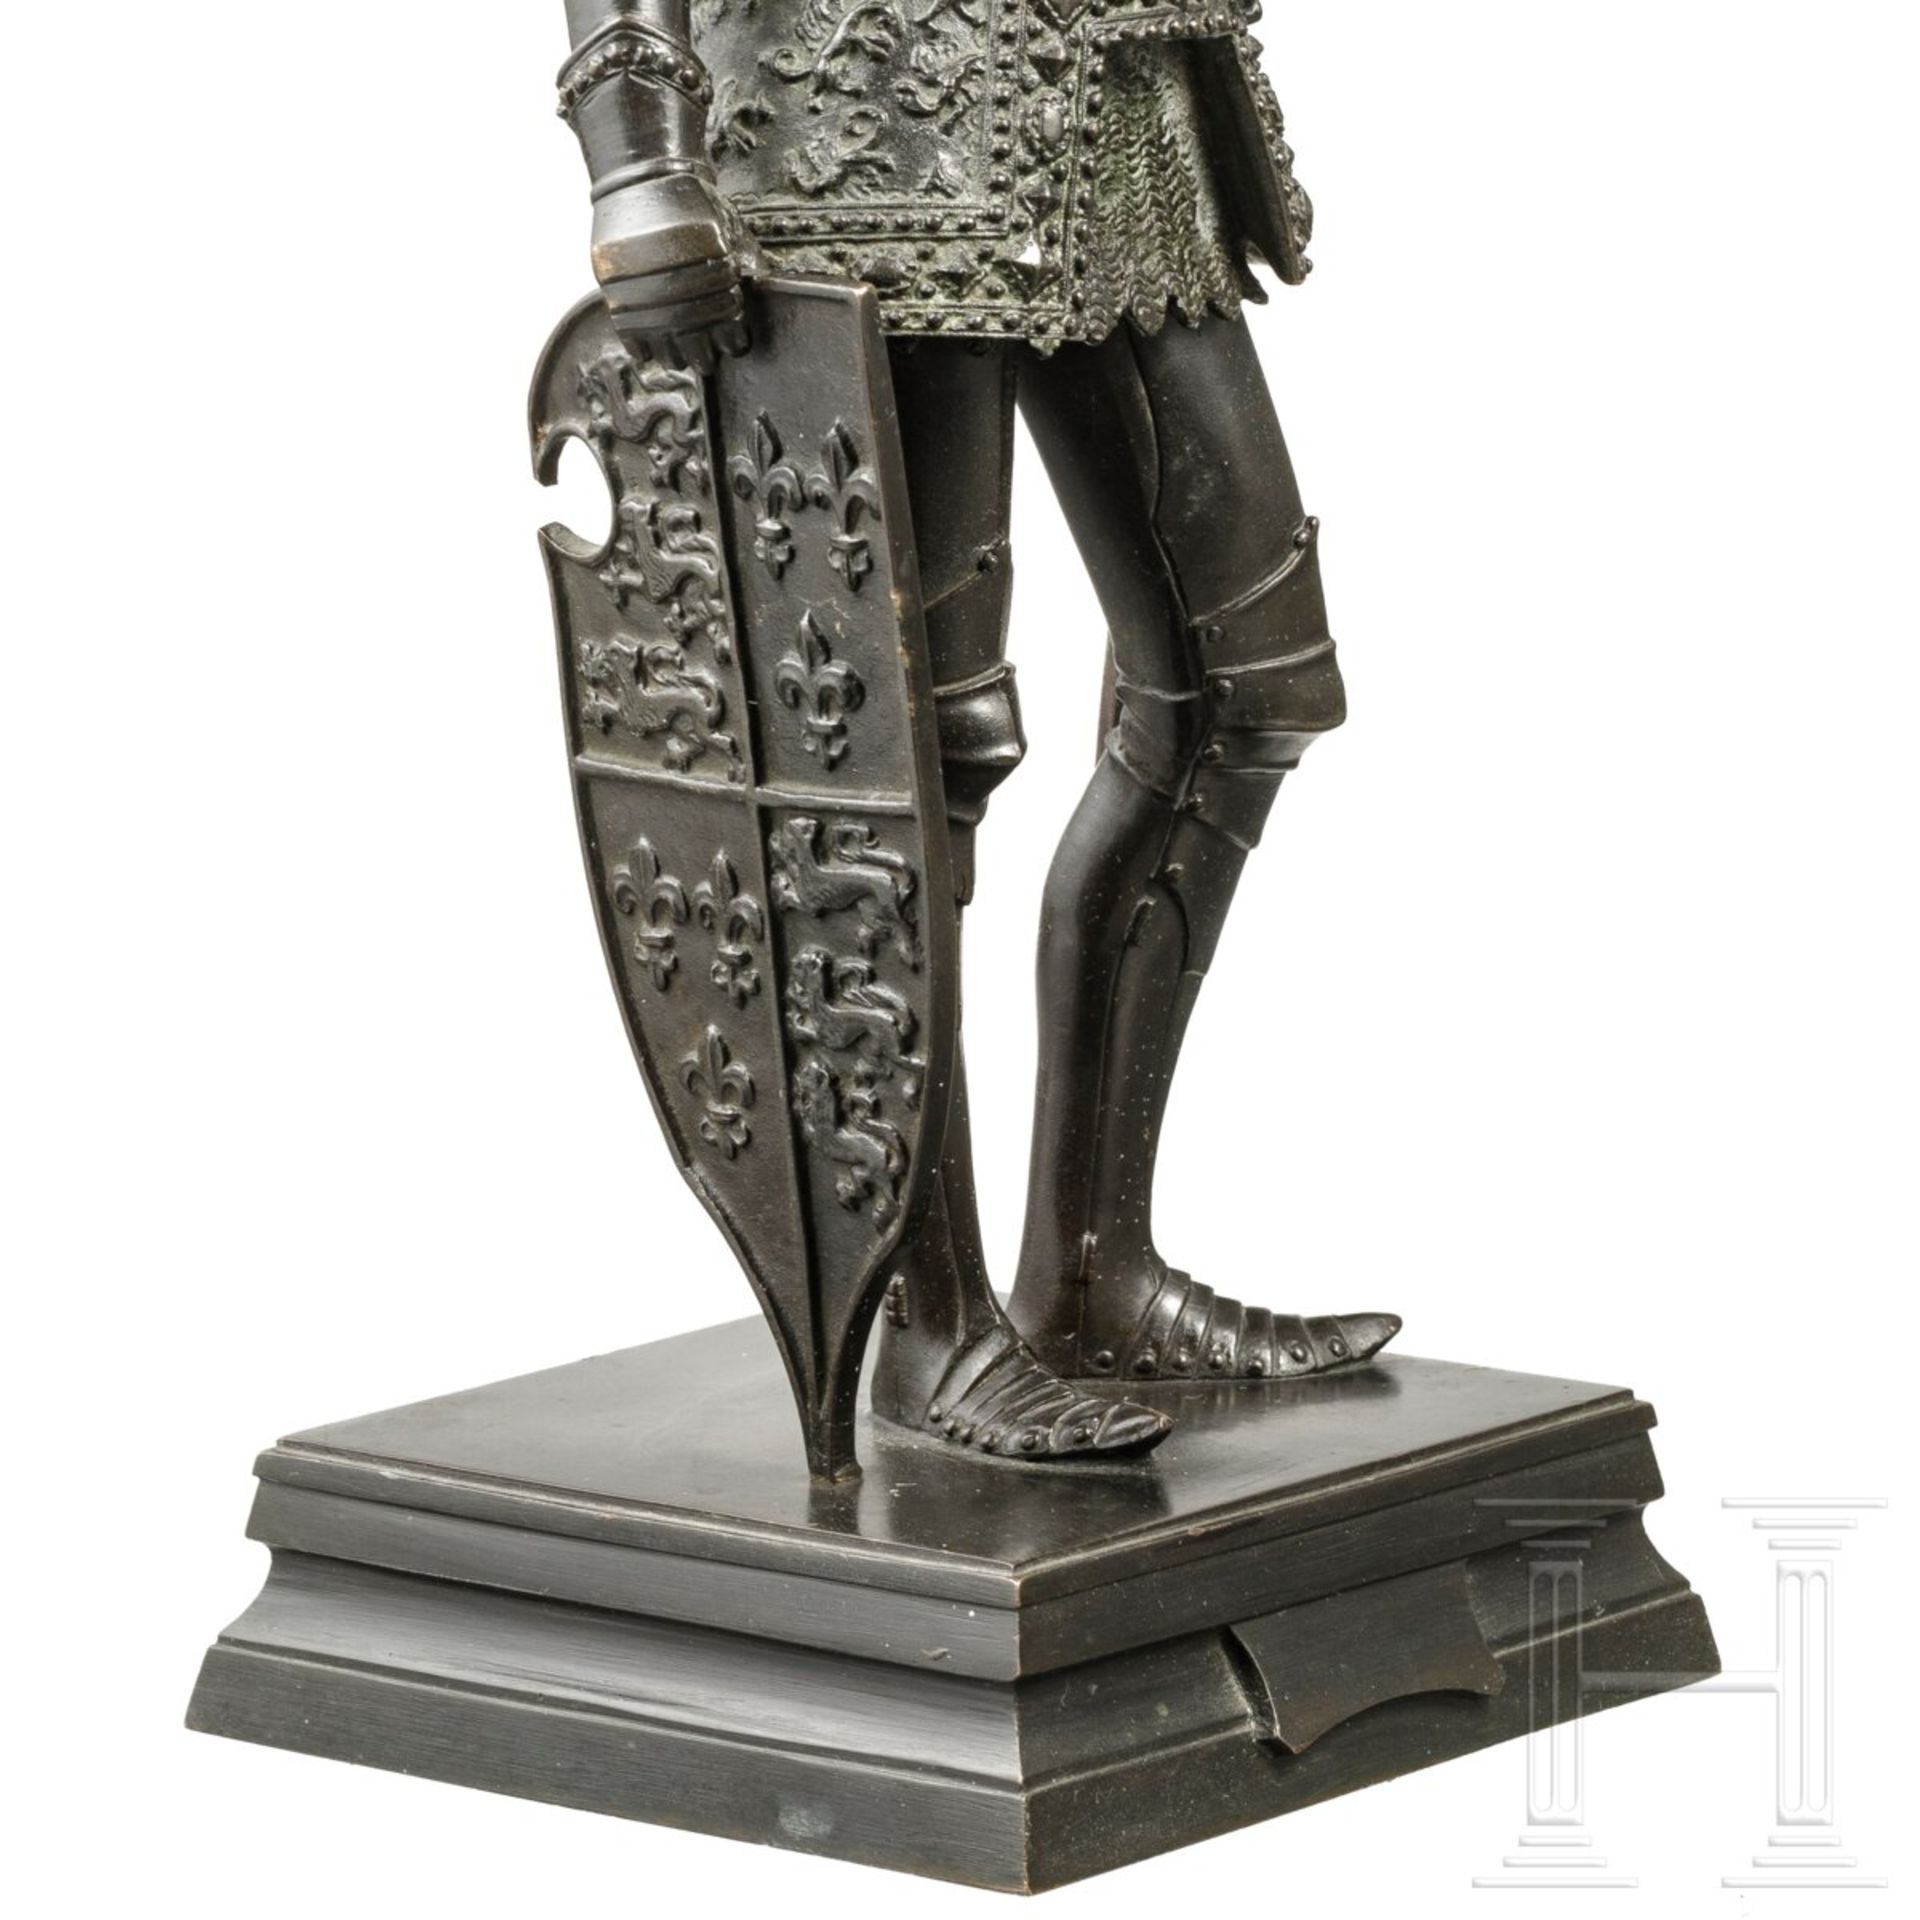 Arthur, König von England - Bronzefigur nach der Innsbrucker Hofkirche, 20. Jhdt. - Bild 4 aus 5